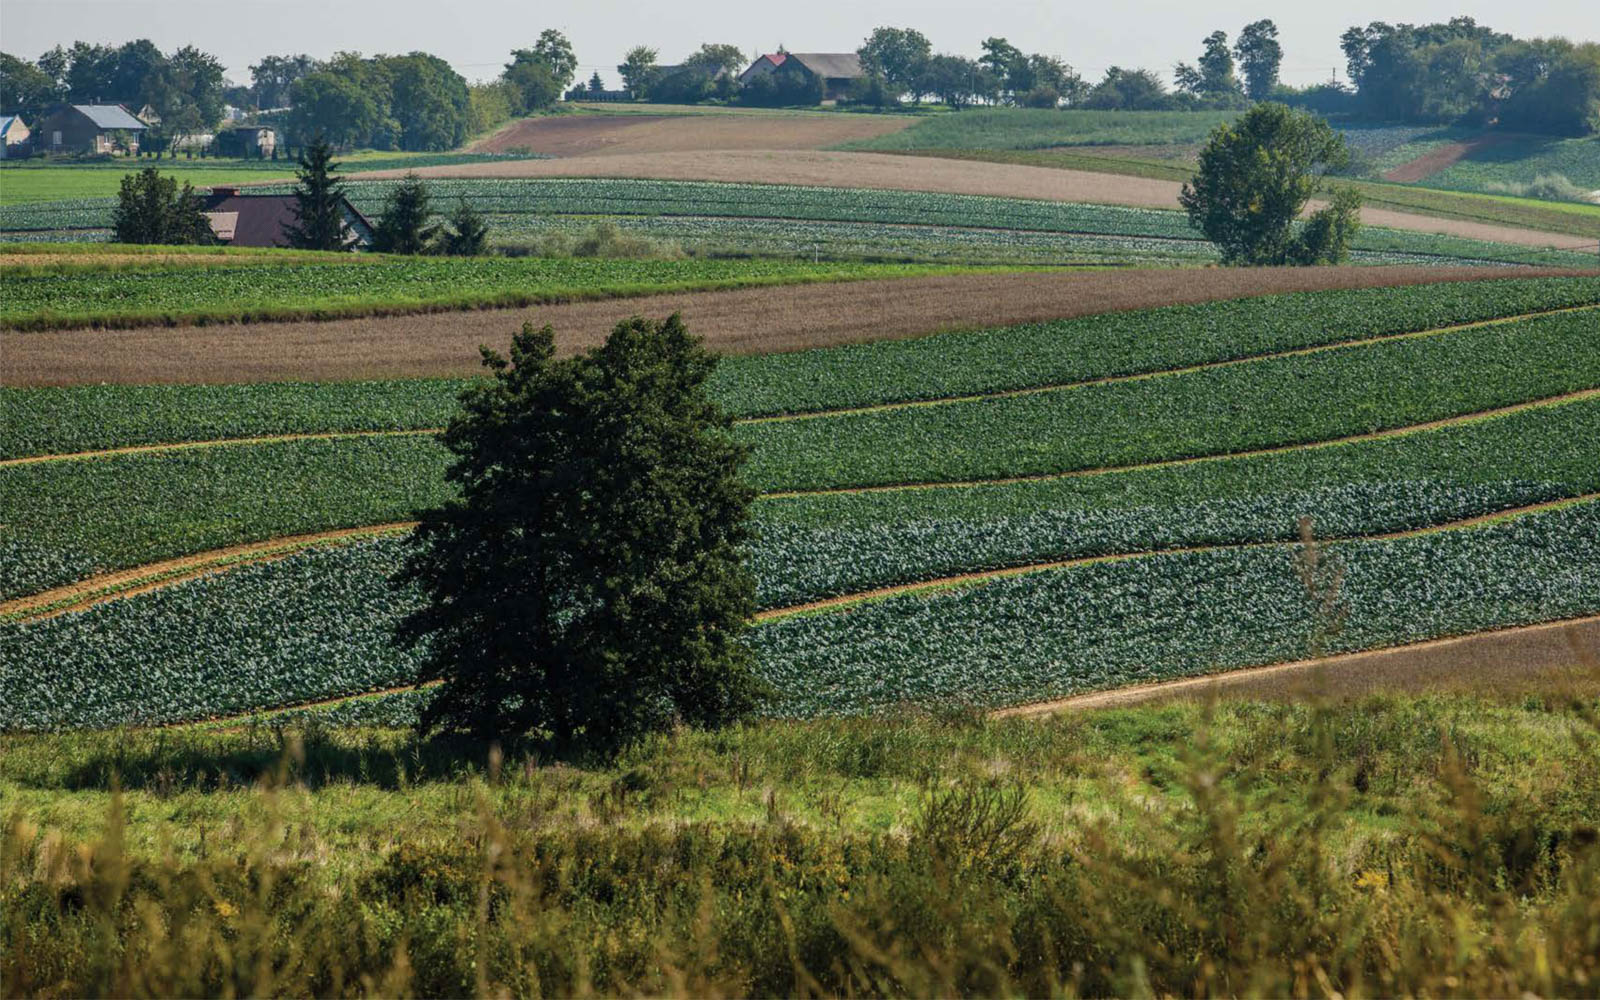 panorama na zielone pola uprawne i domostwa w oddali na horyzoncie